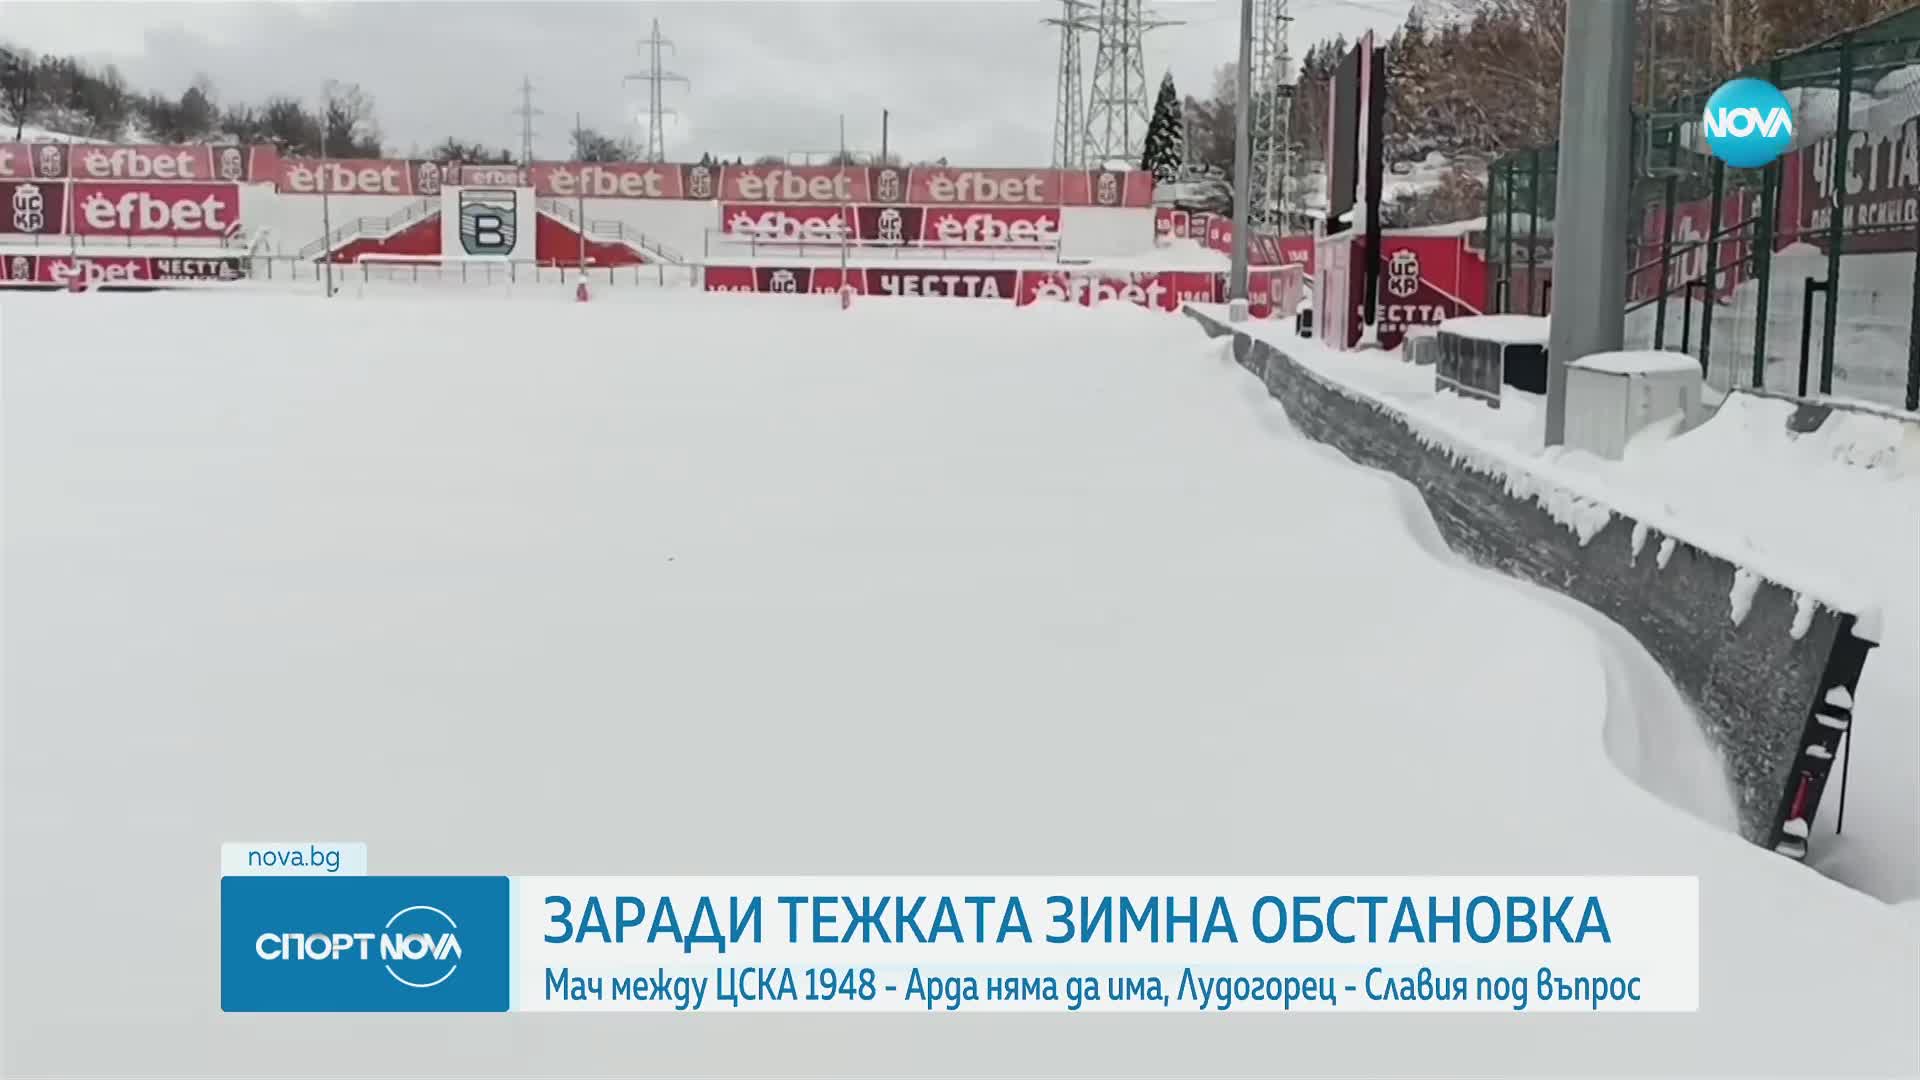 Заради тежката зимна обстановка отлагат мачове от Efbet Лига